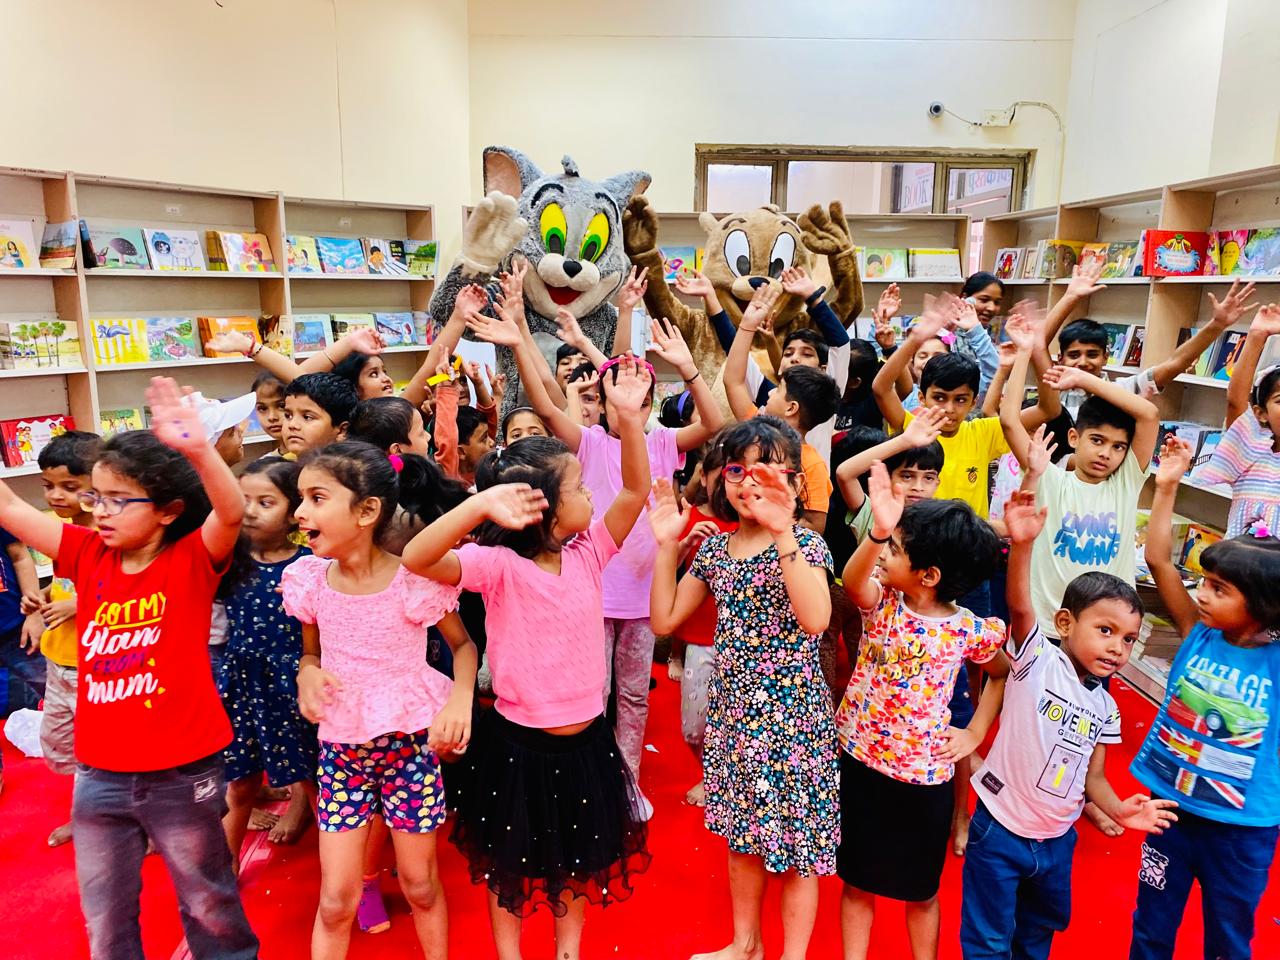 नेशनल बुक ट्रस्ट इंडिया के समर कैंप में बच्चों ने Let us Meet Tom And Jerry कार्यक्रम में की जमकर मस्ती